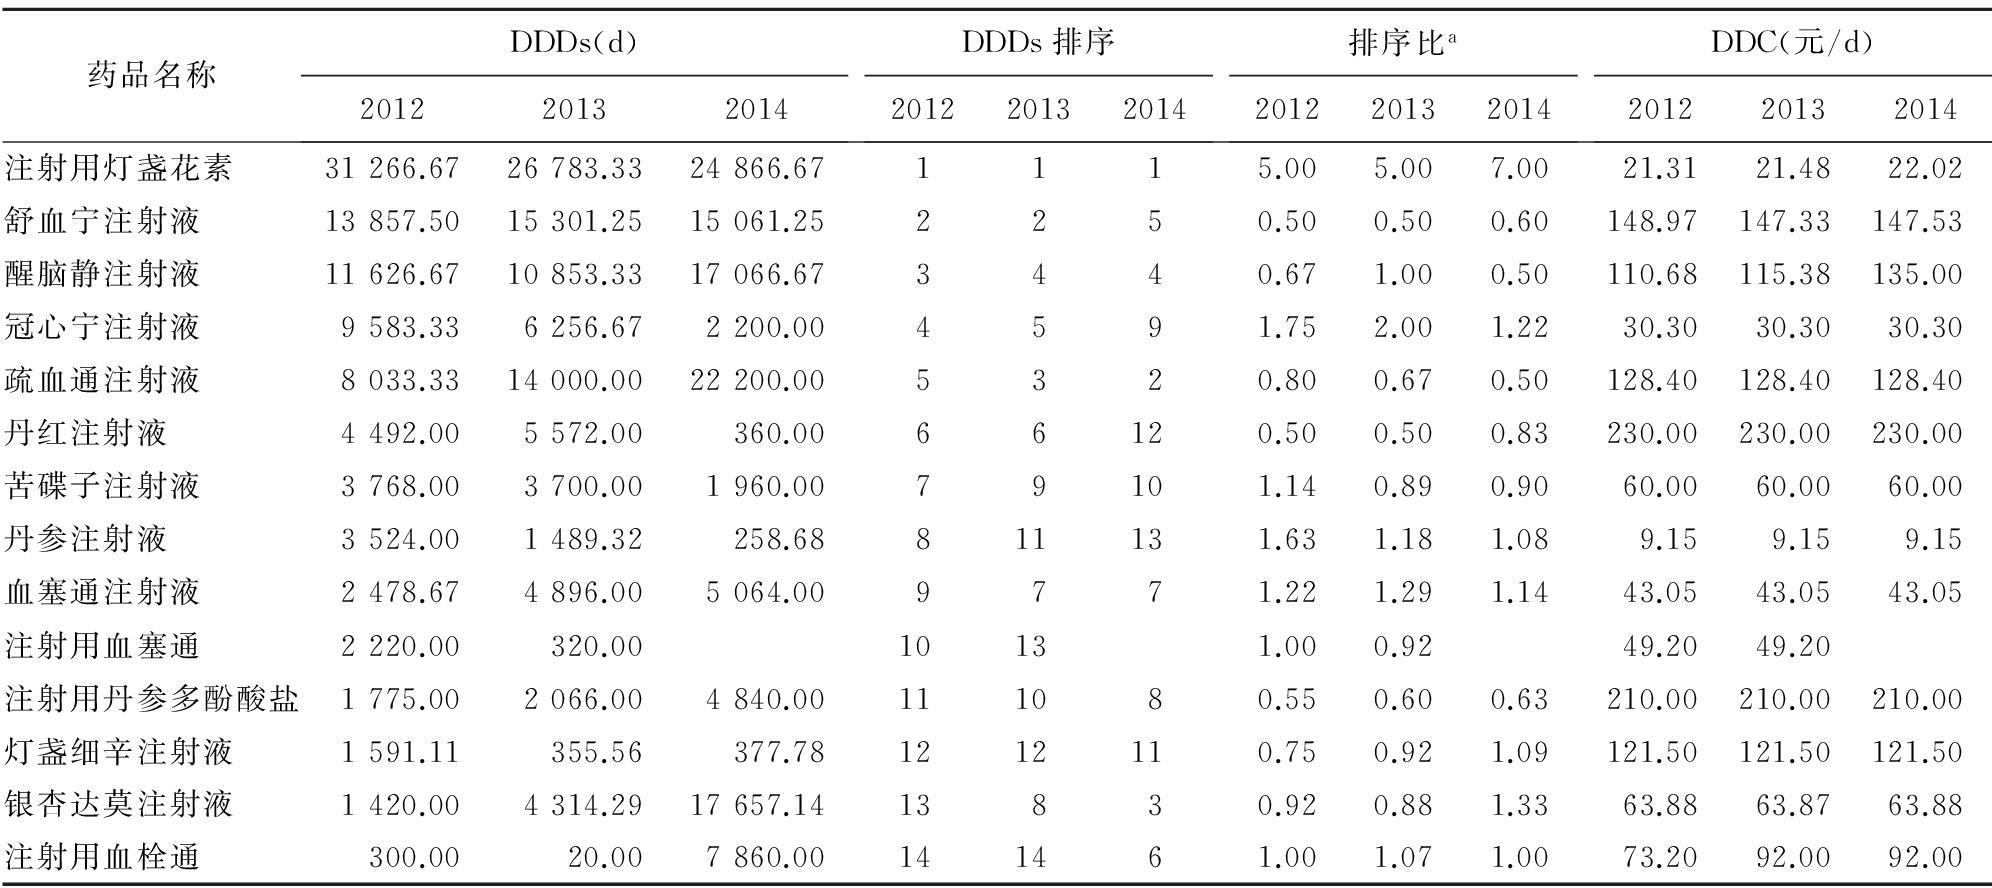 上海市浦东新区人民医院2012-2014年活血化瘀